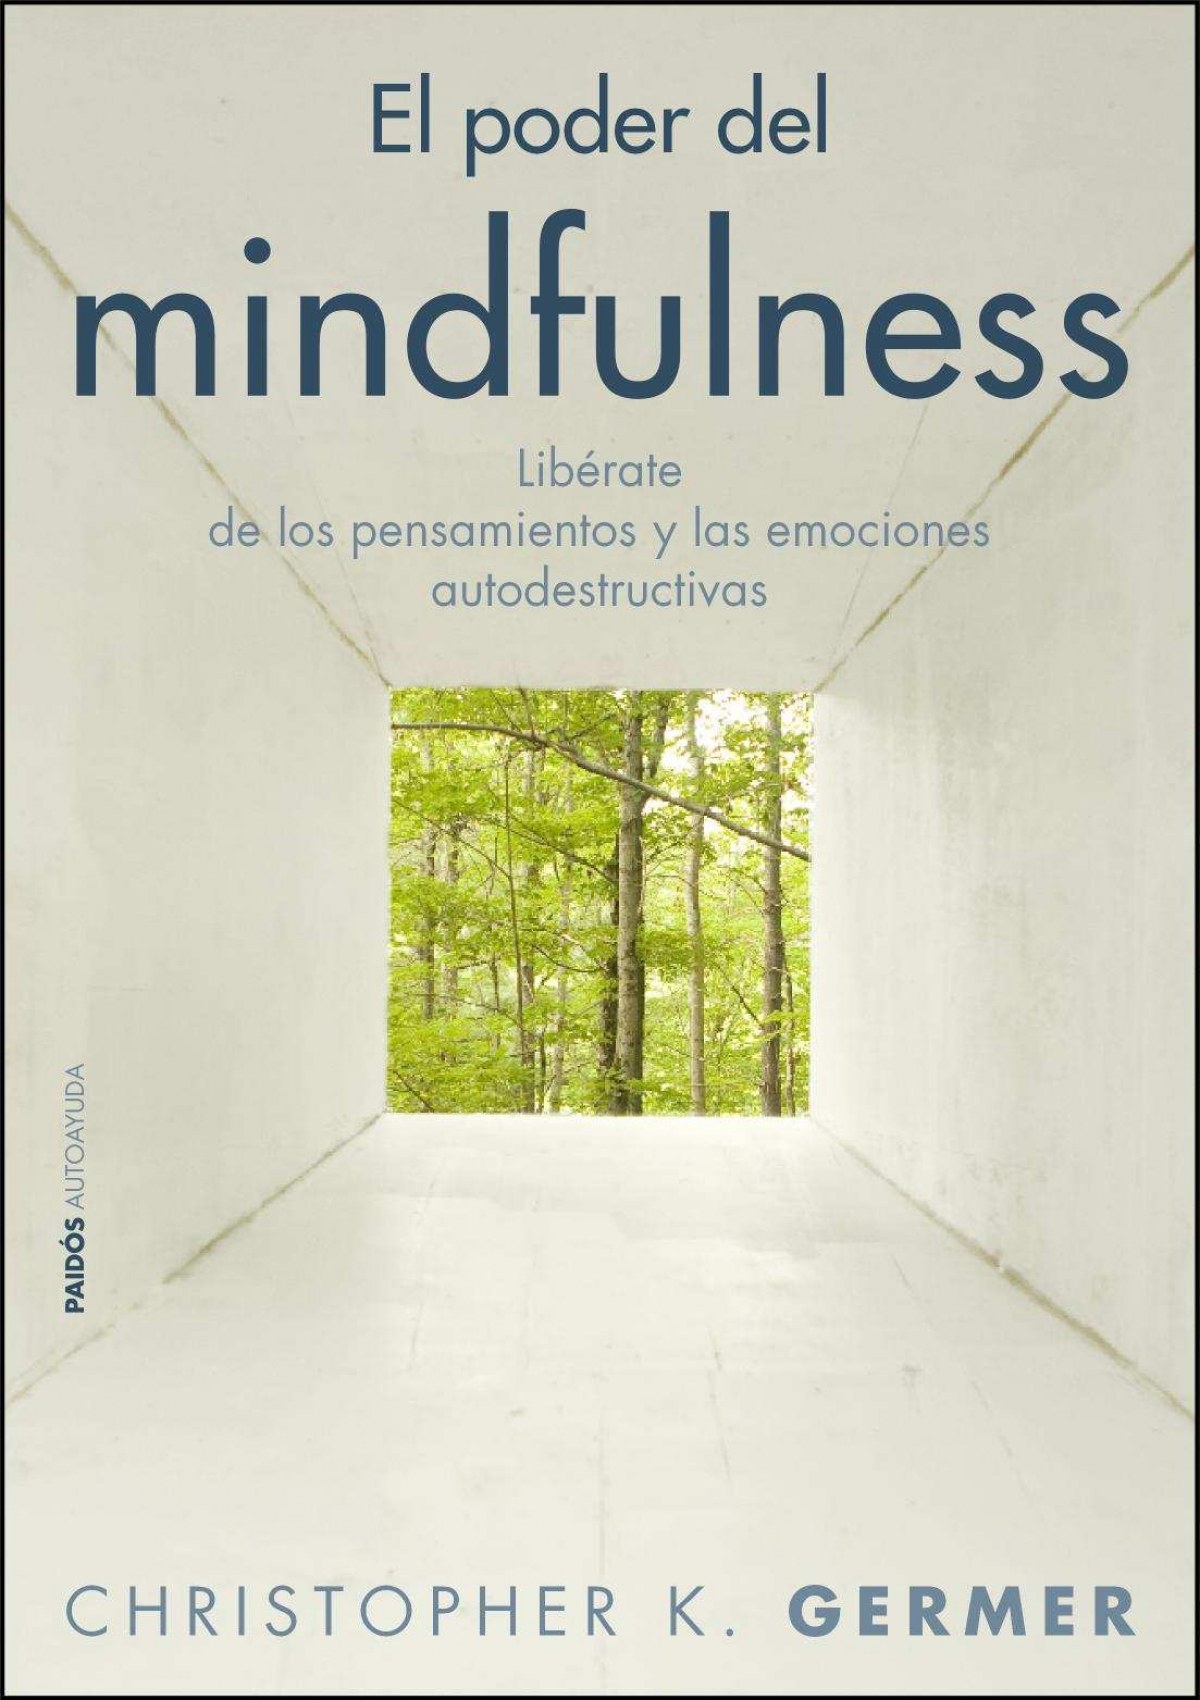 El poder del mindfulness Libérate de los pensamientos y las emociones - Christopher K. Germer